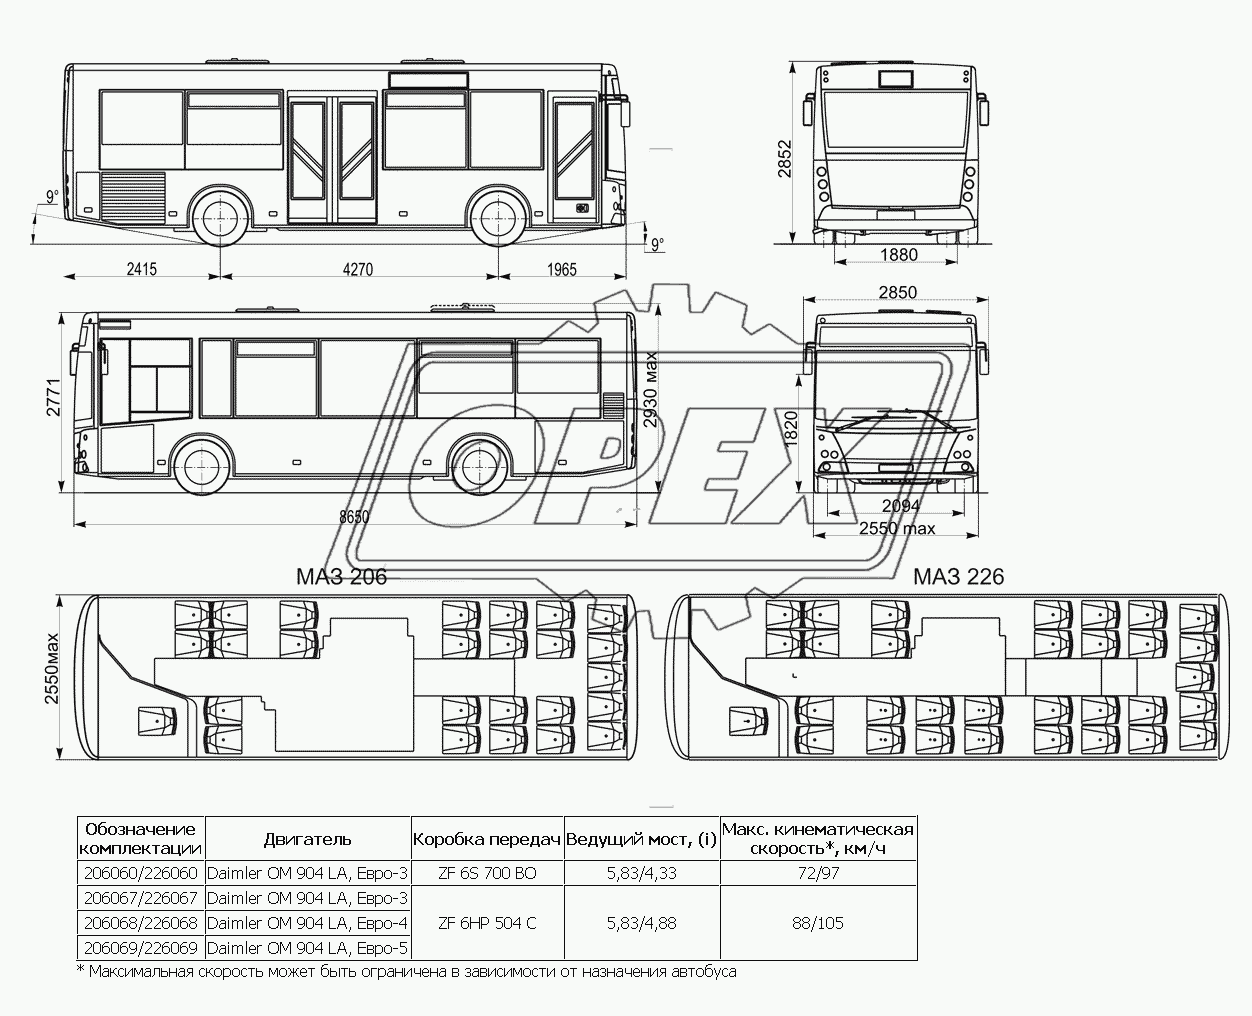 Основные размеры, планировка и комплектации автобусов МАЗ 206, МАЗ 226